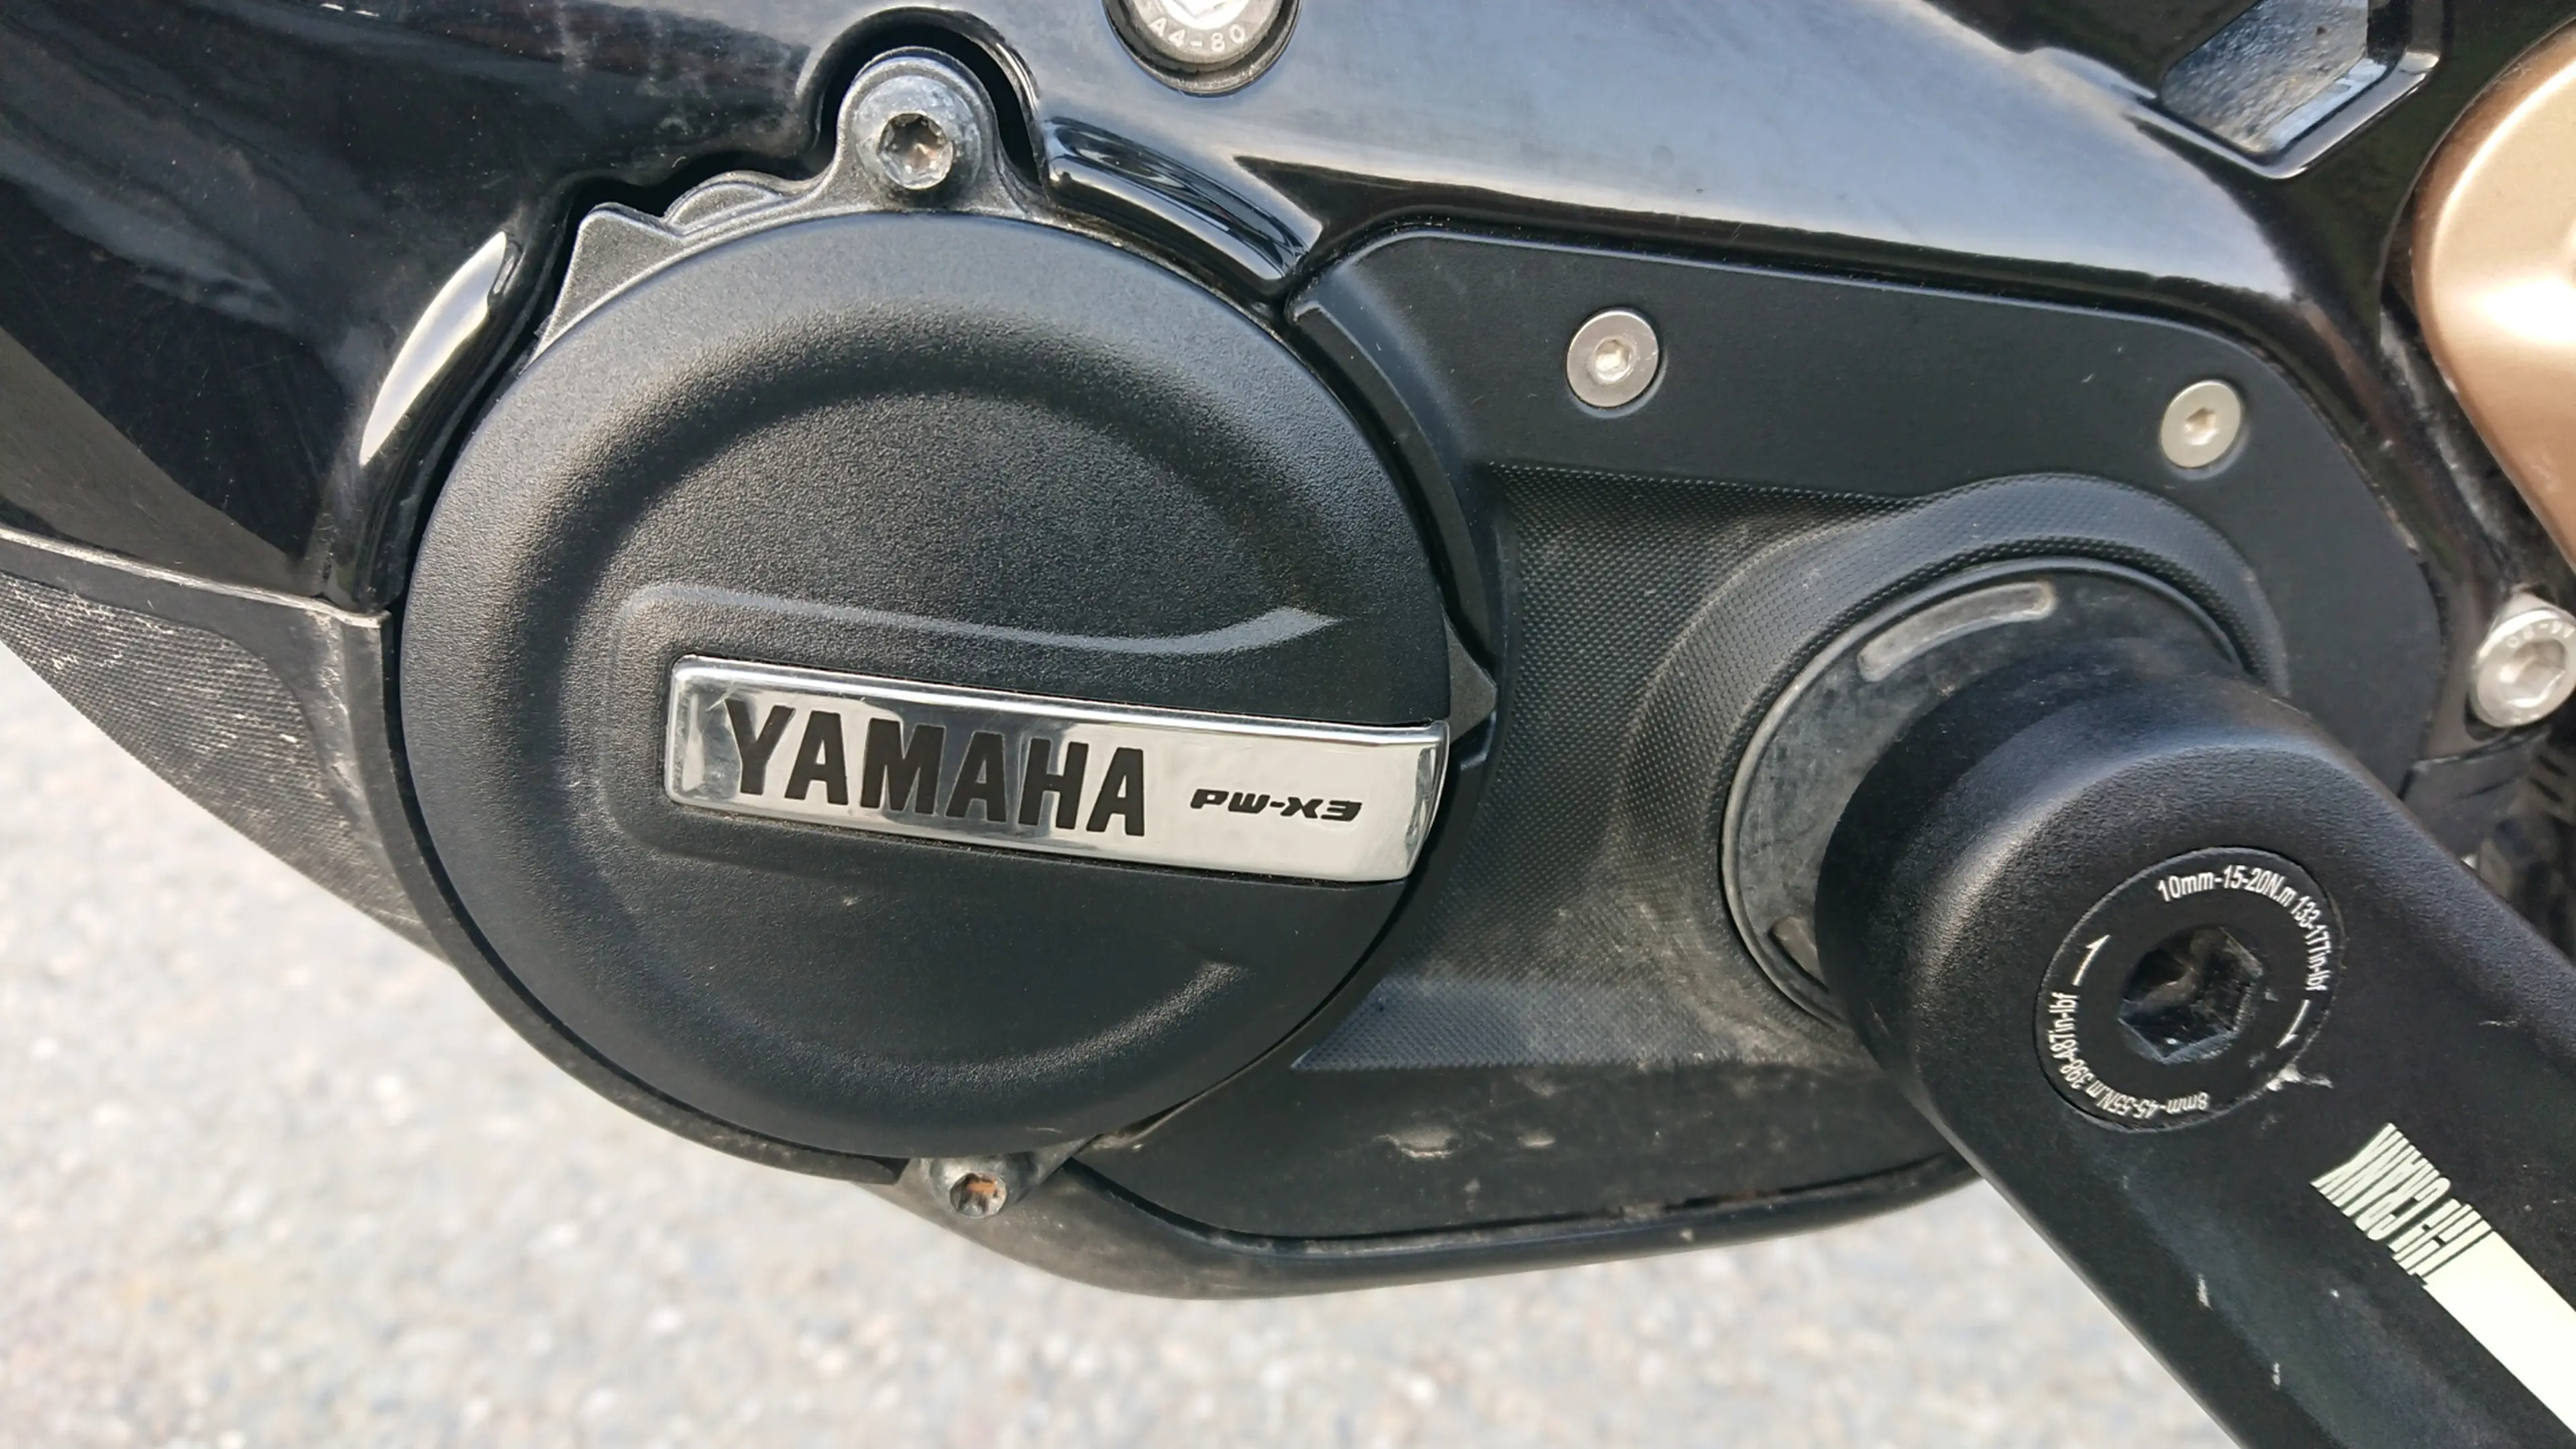 5. Haibike, 29, Yamaha pw-x3, 12v, 875 km